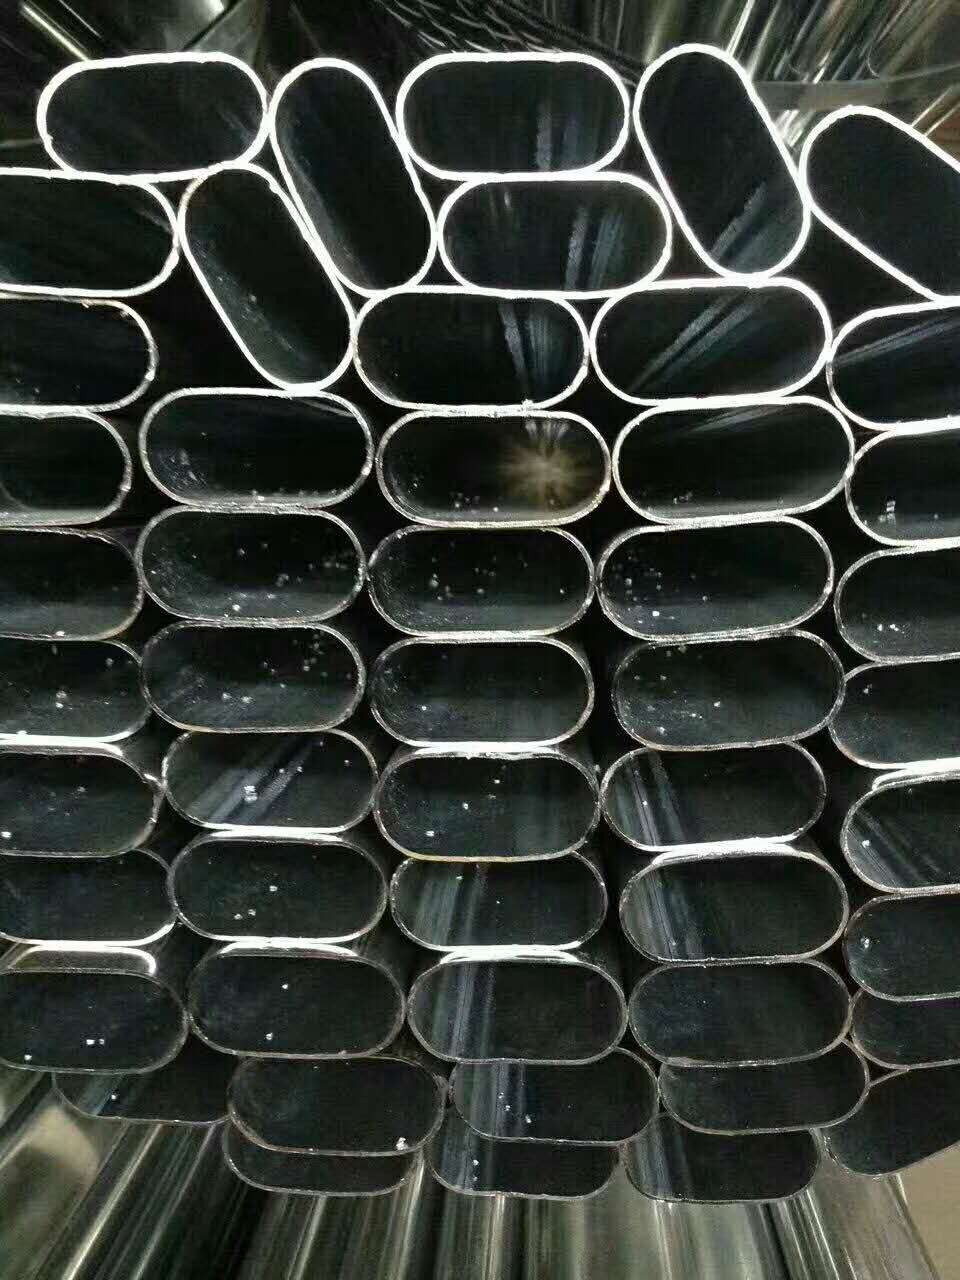 锌钢护栏常用的管材规格有哪些